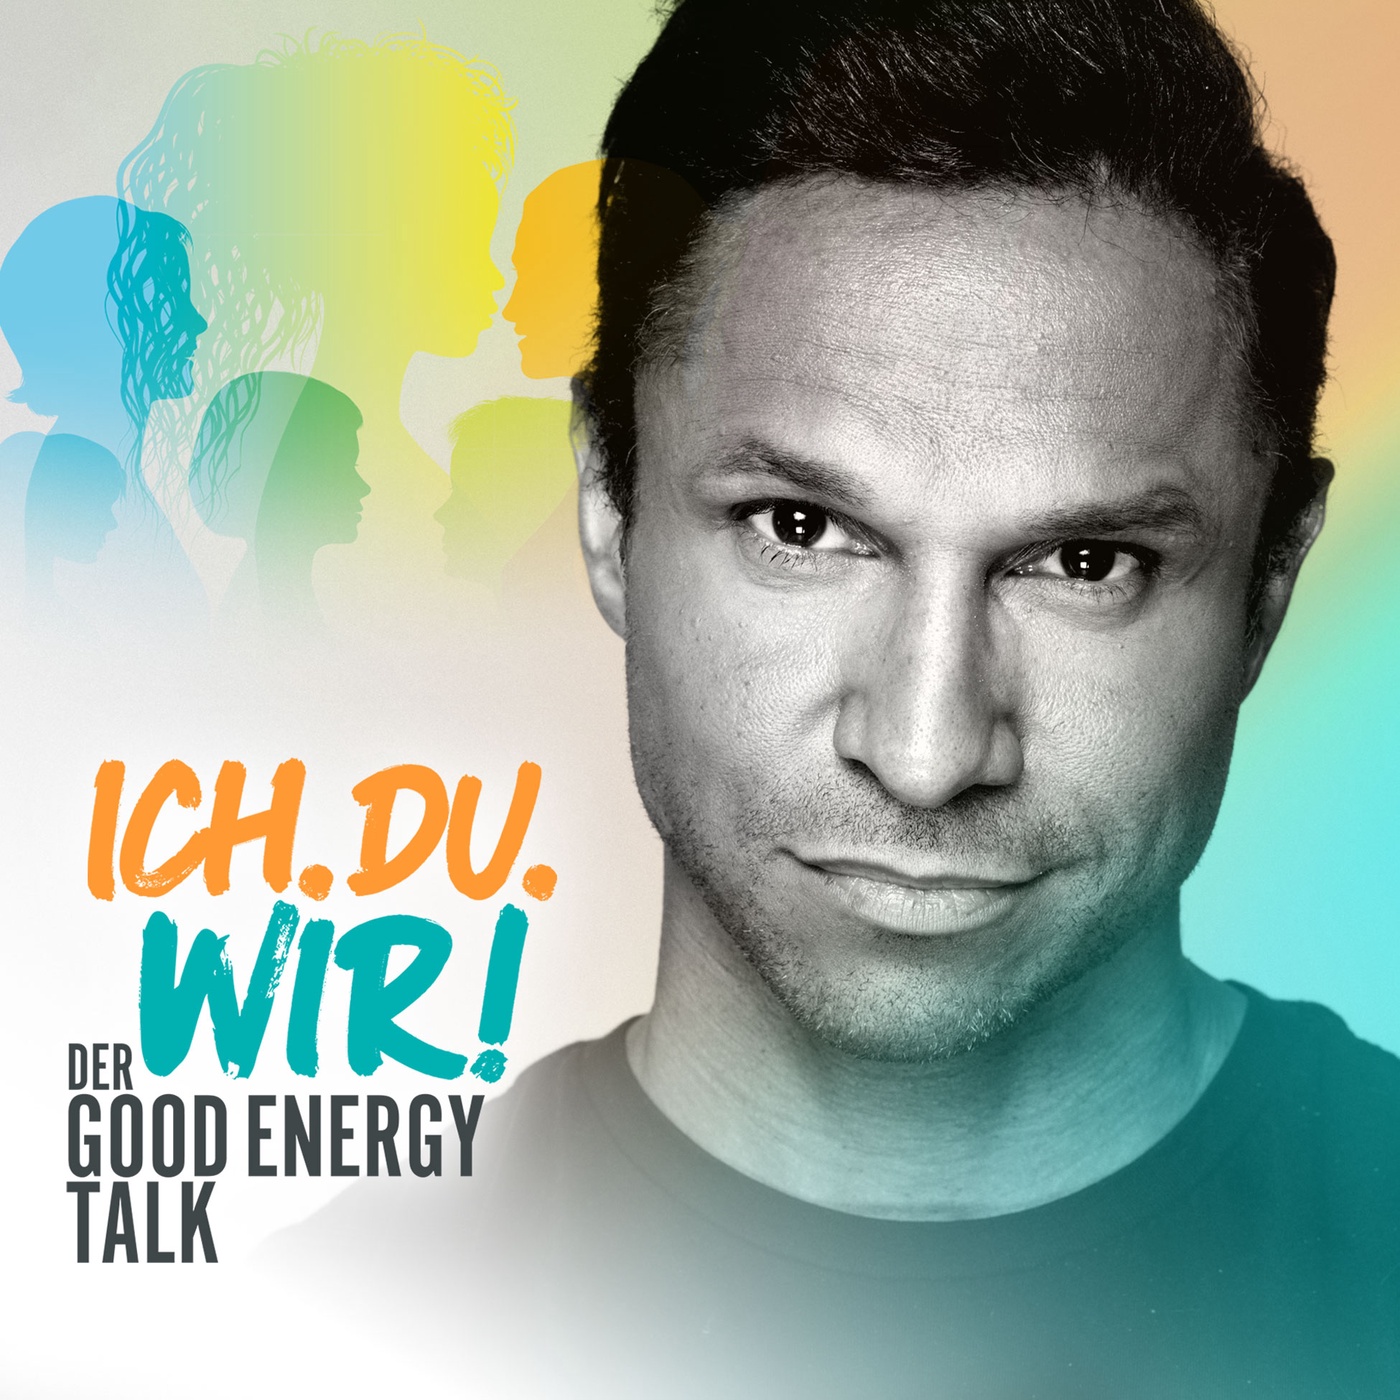 ICH. DU. WIR! - Der Good Energy Talk mit Daniel Aminati